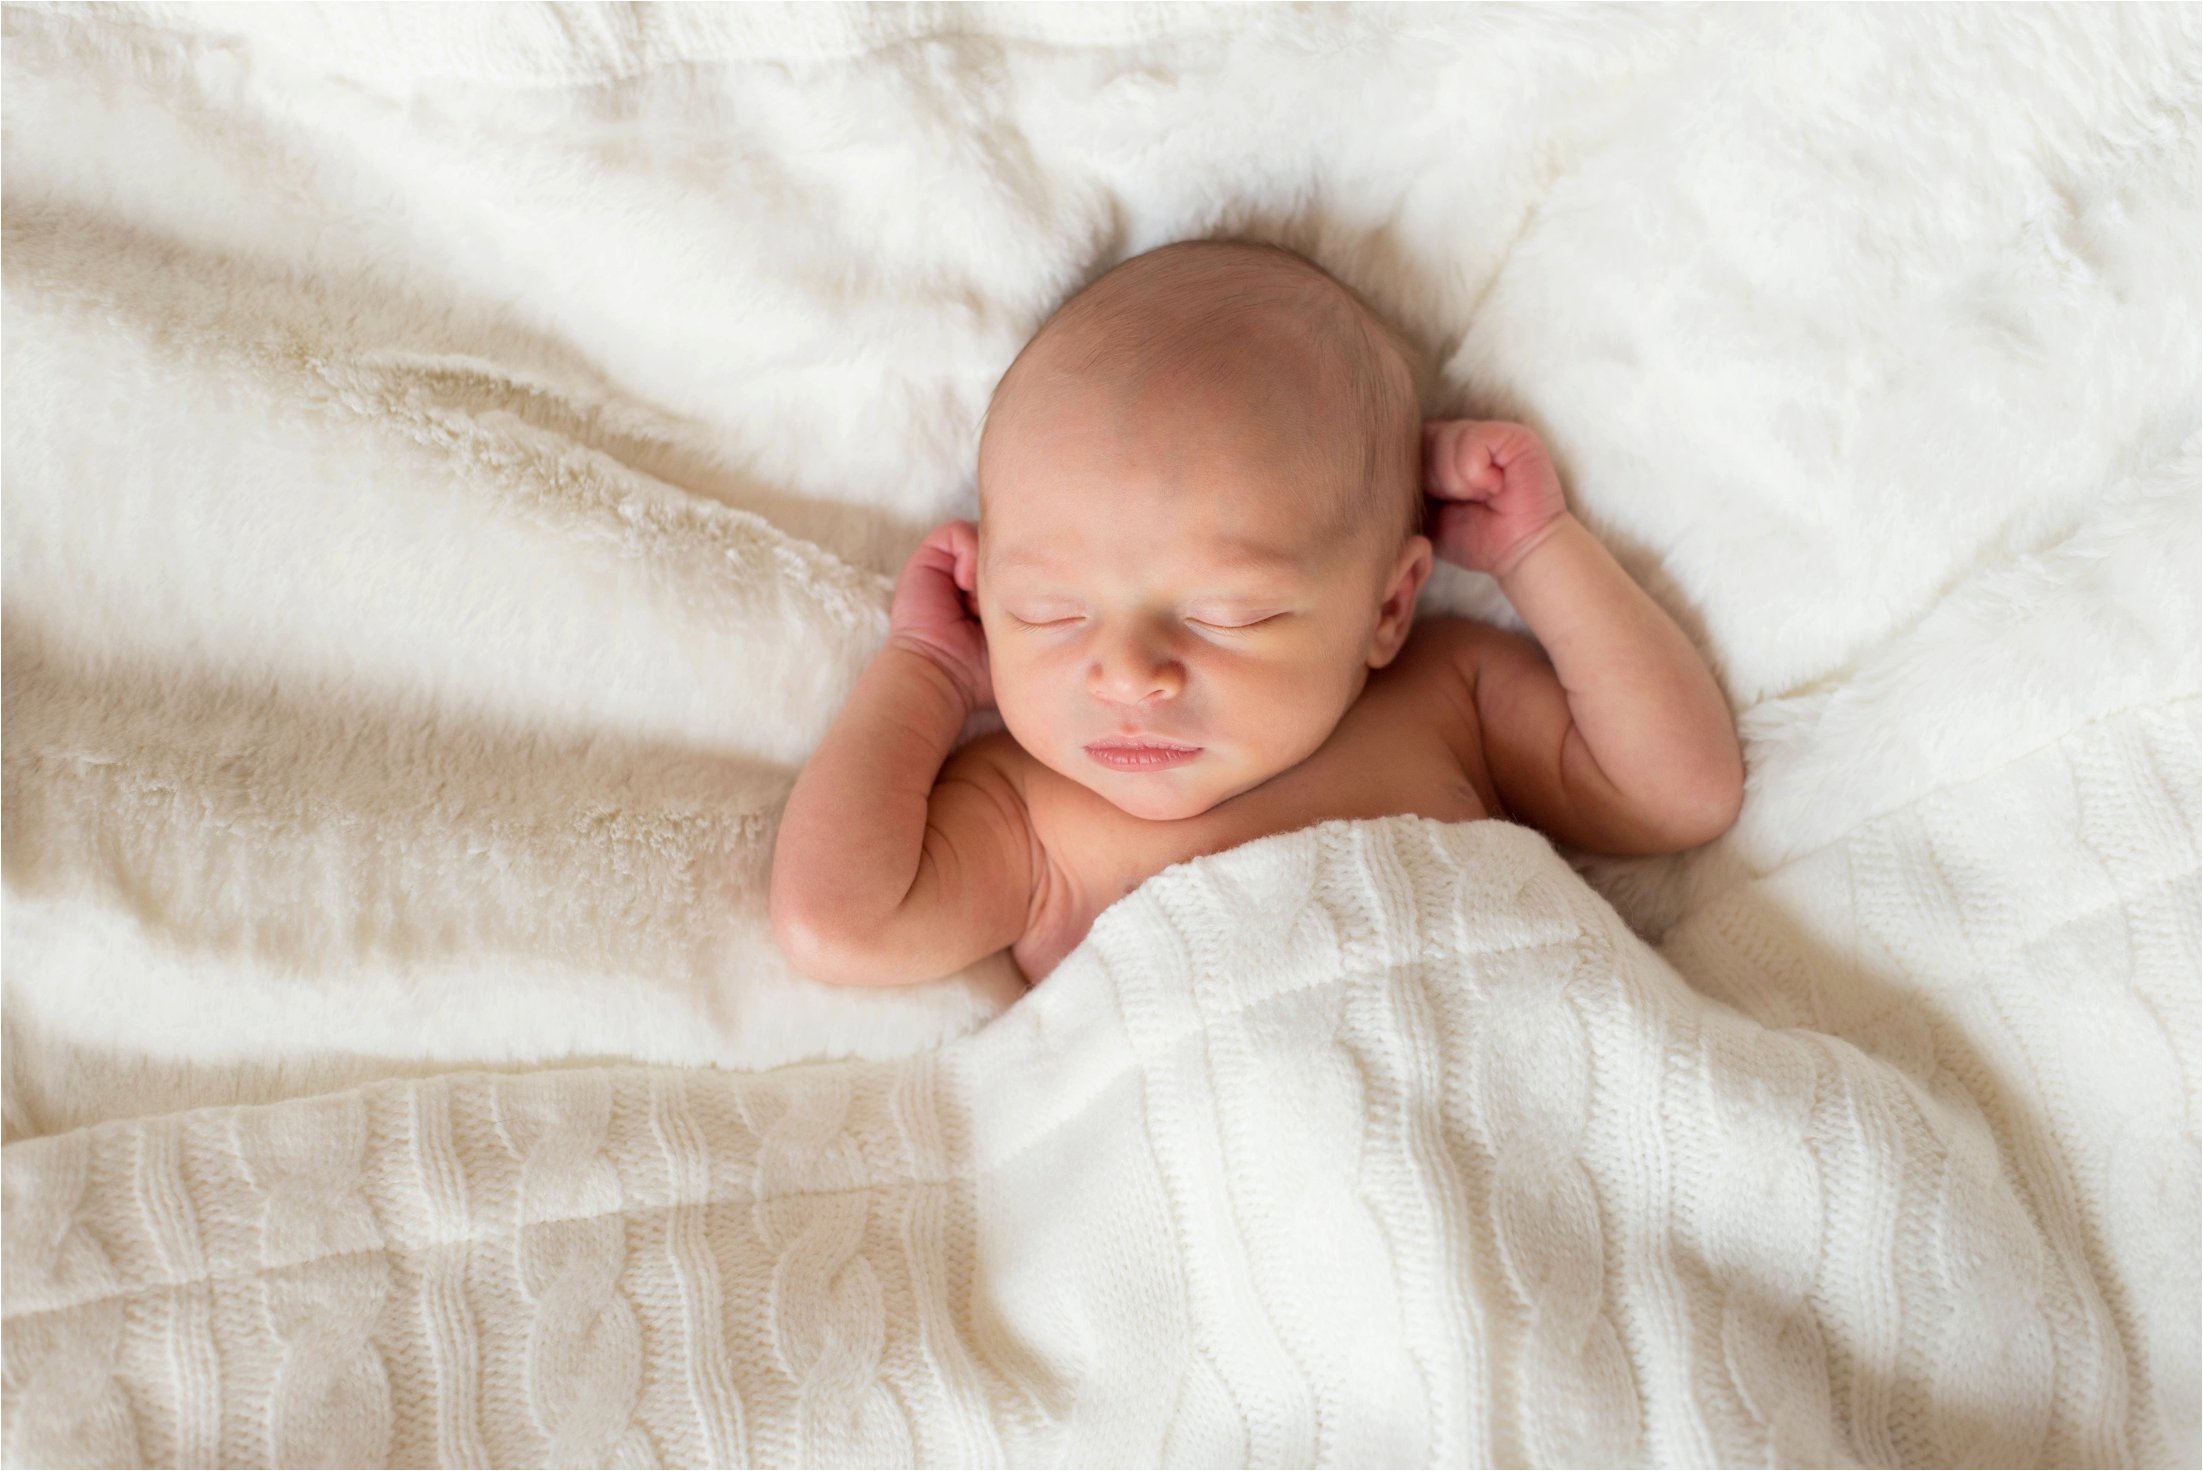 Chicago Newborn baby boy photos